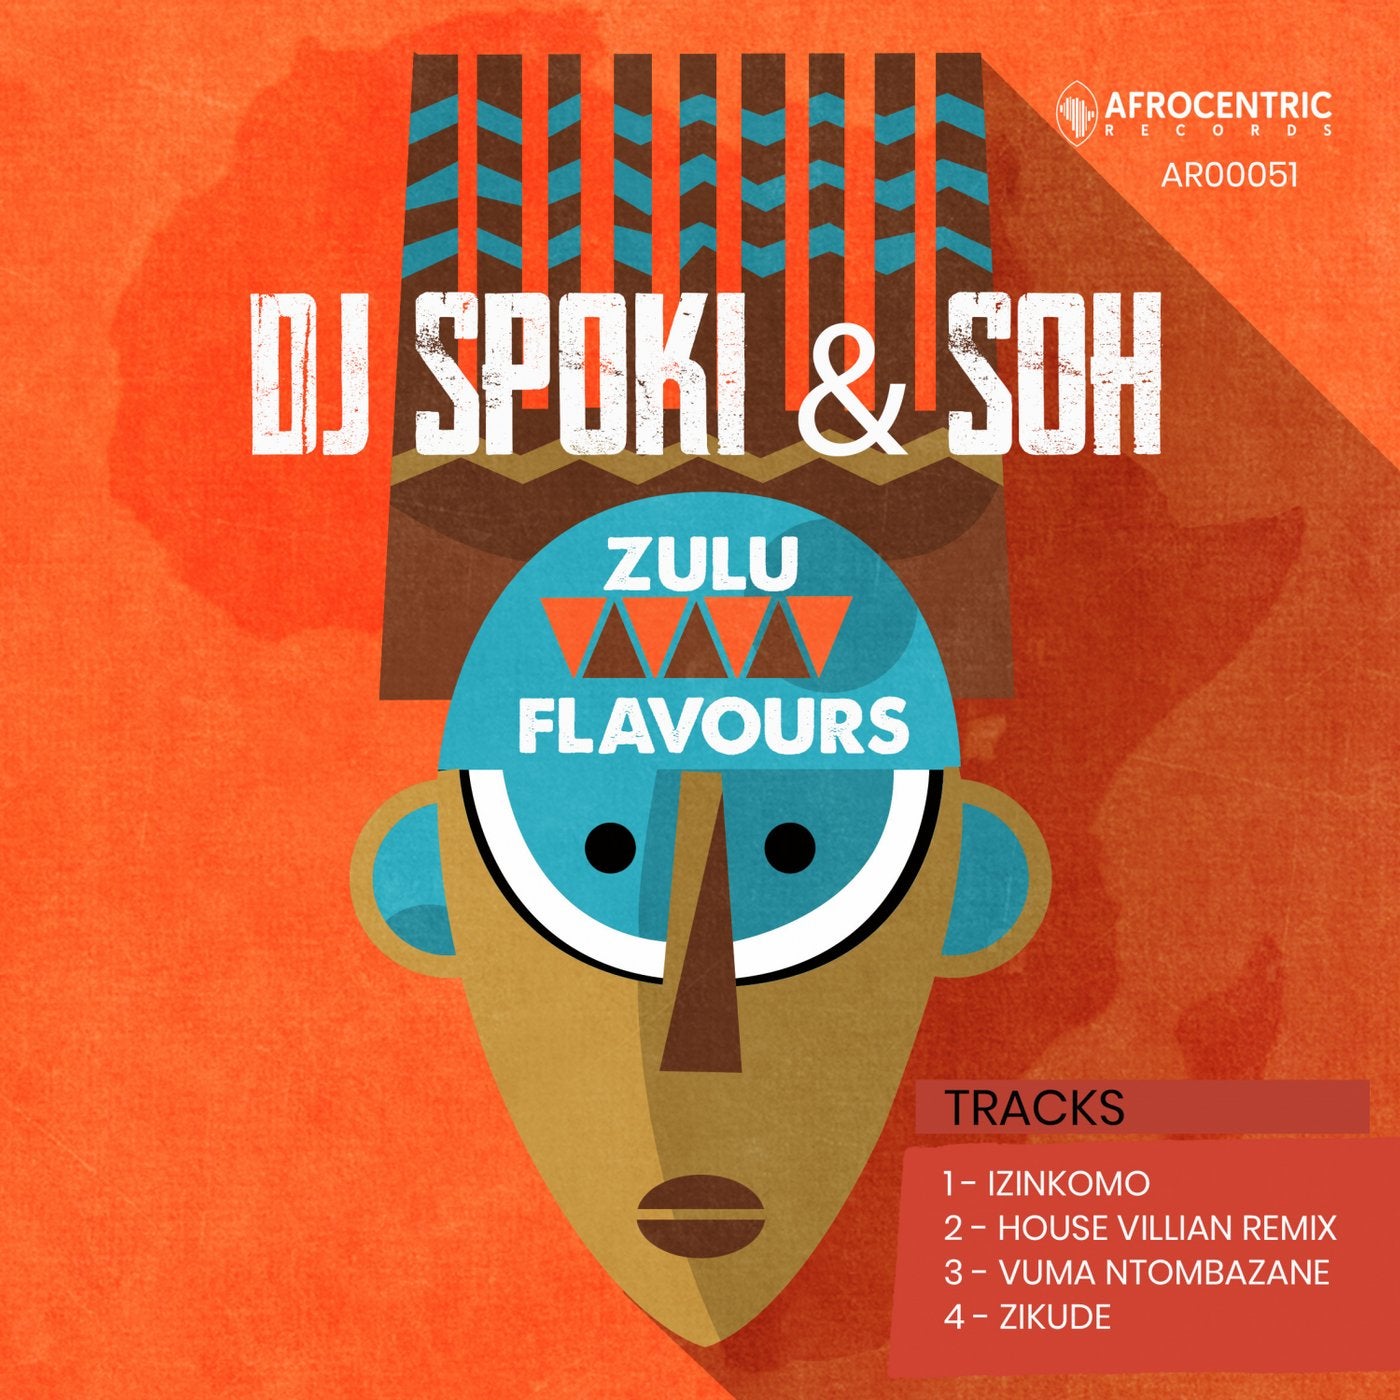 Zulu Flavours